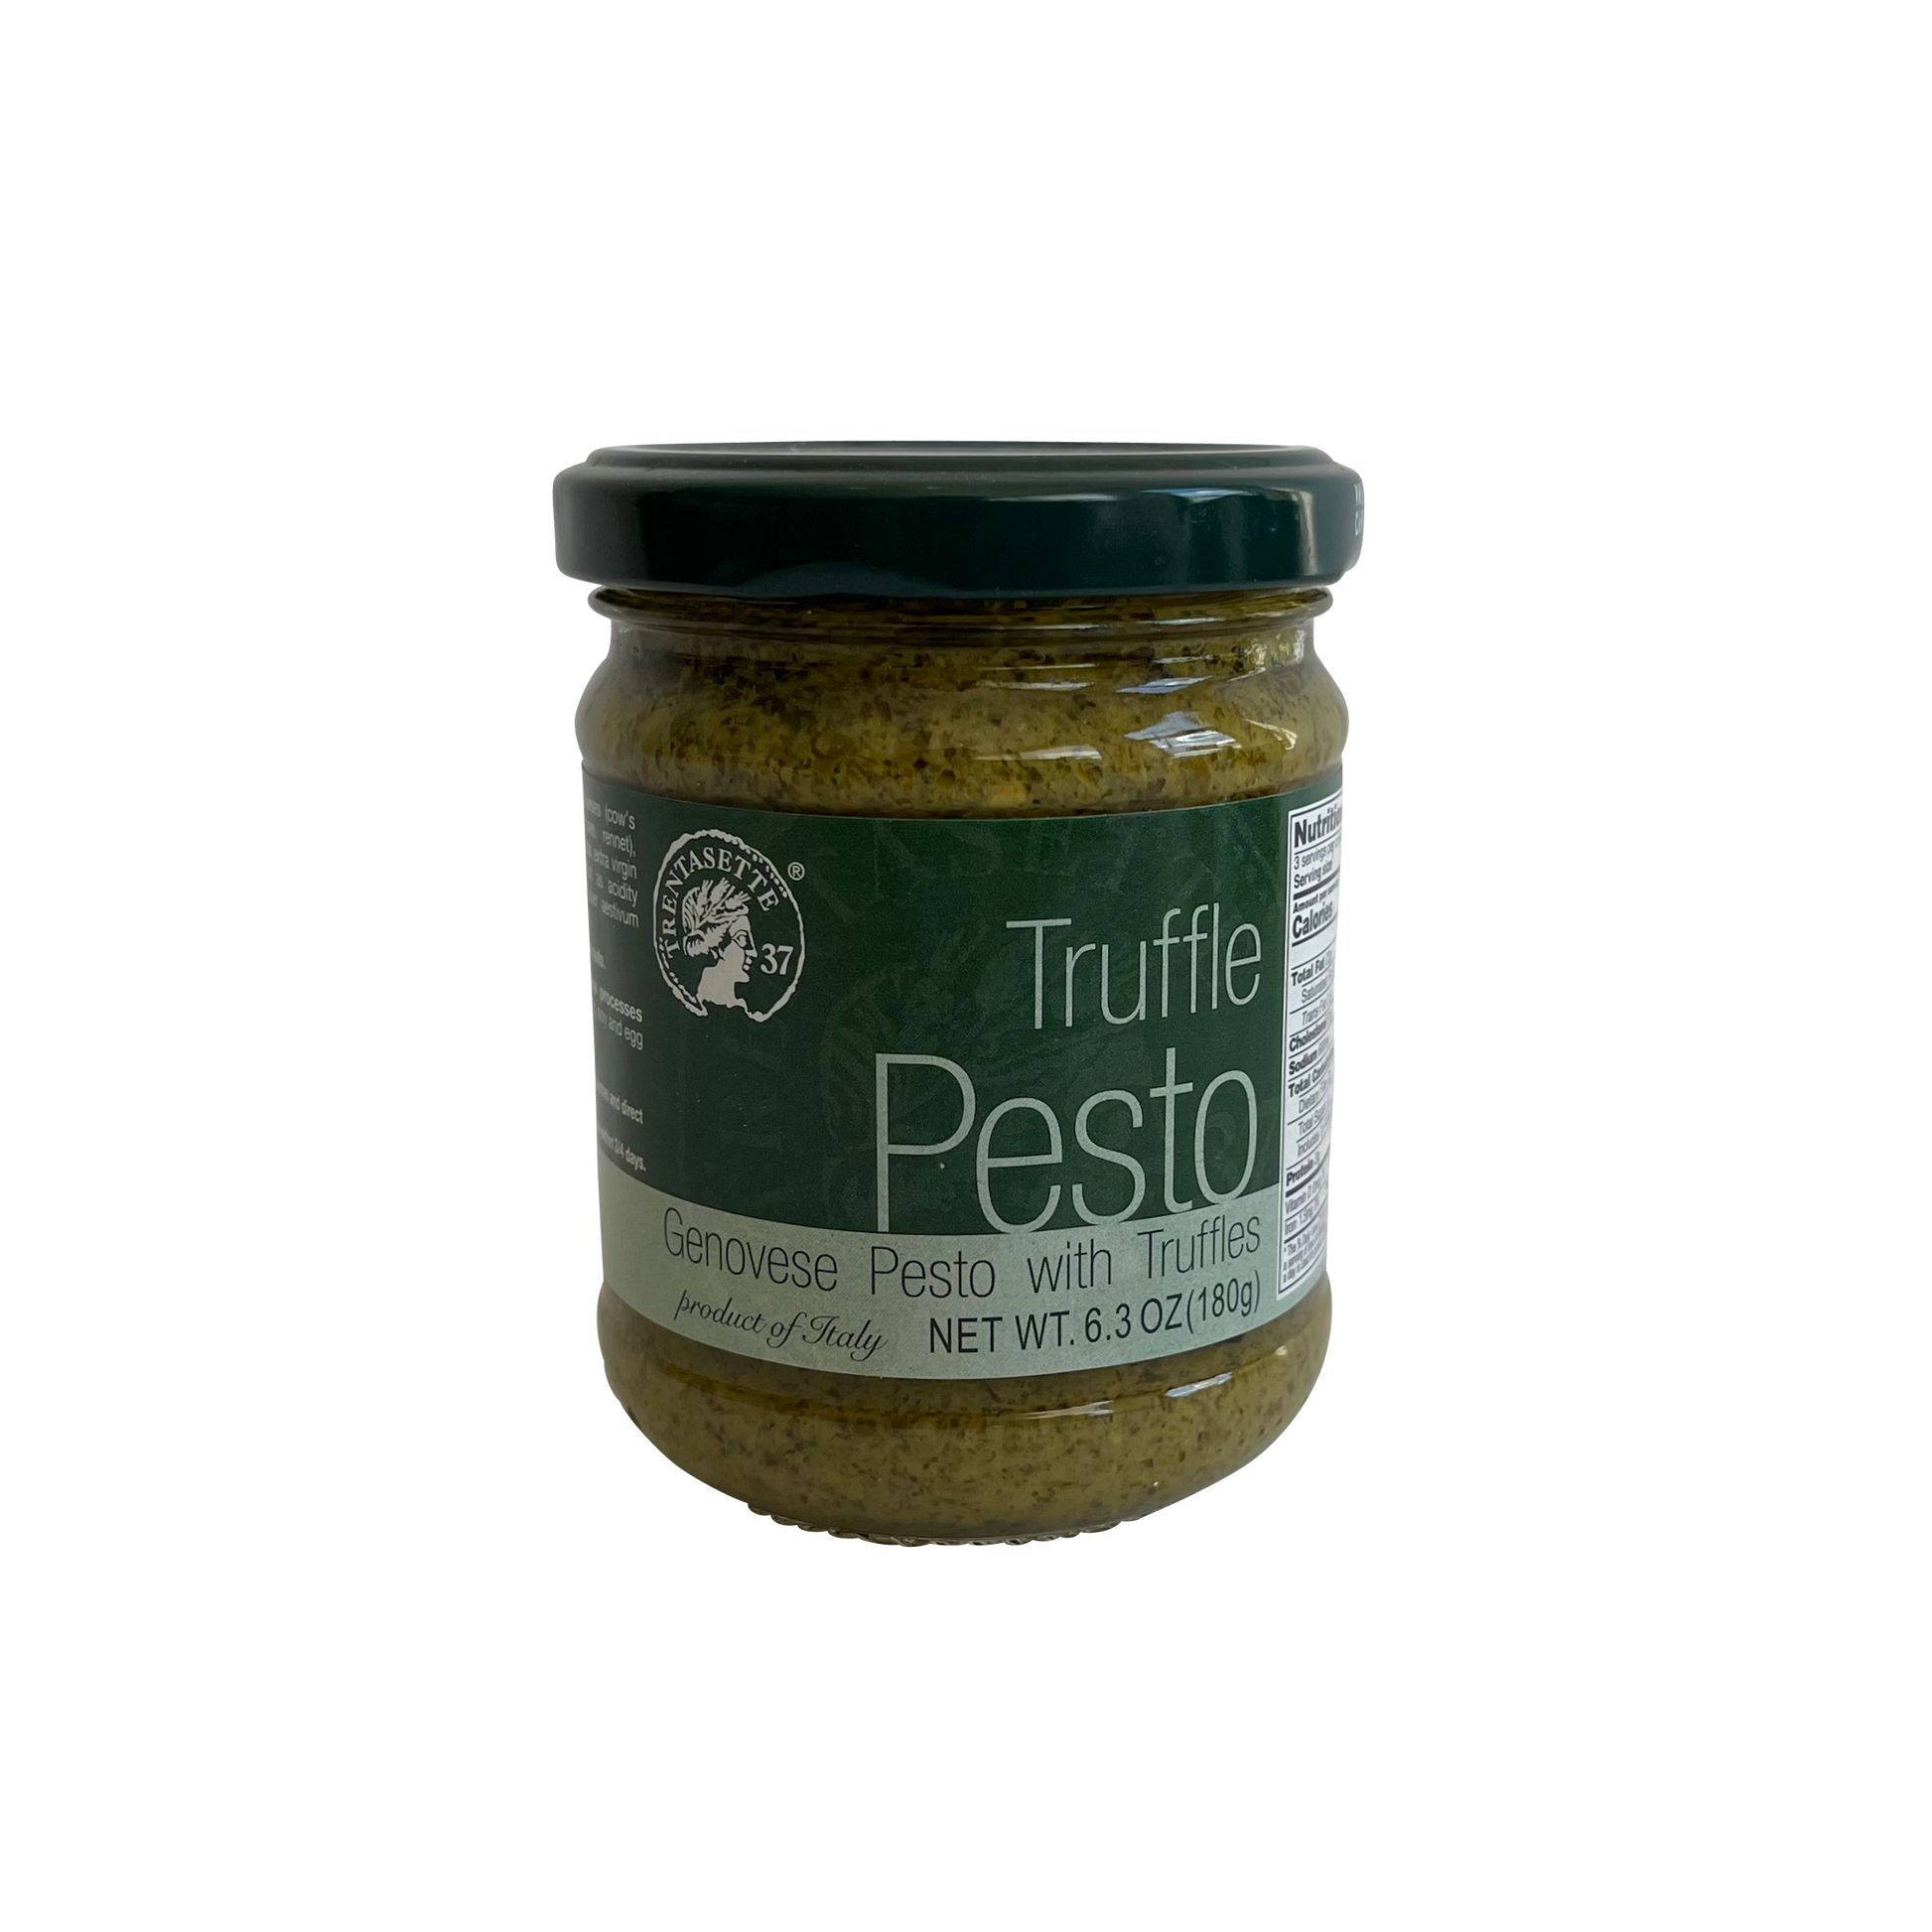 Trentasette Genovese Pesto with Truffles TRN-005